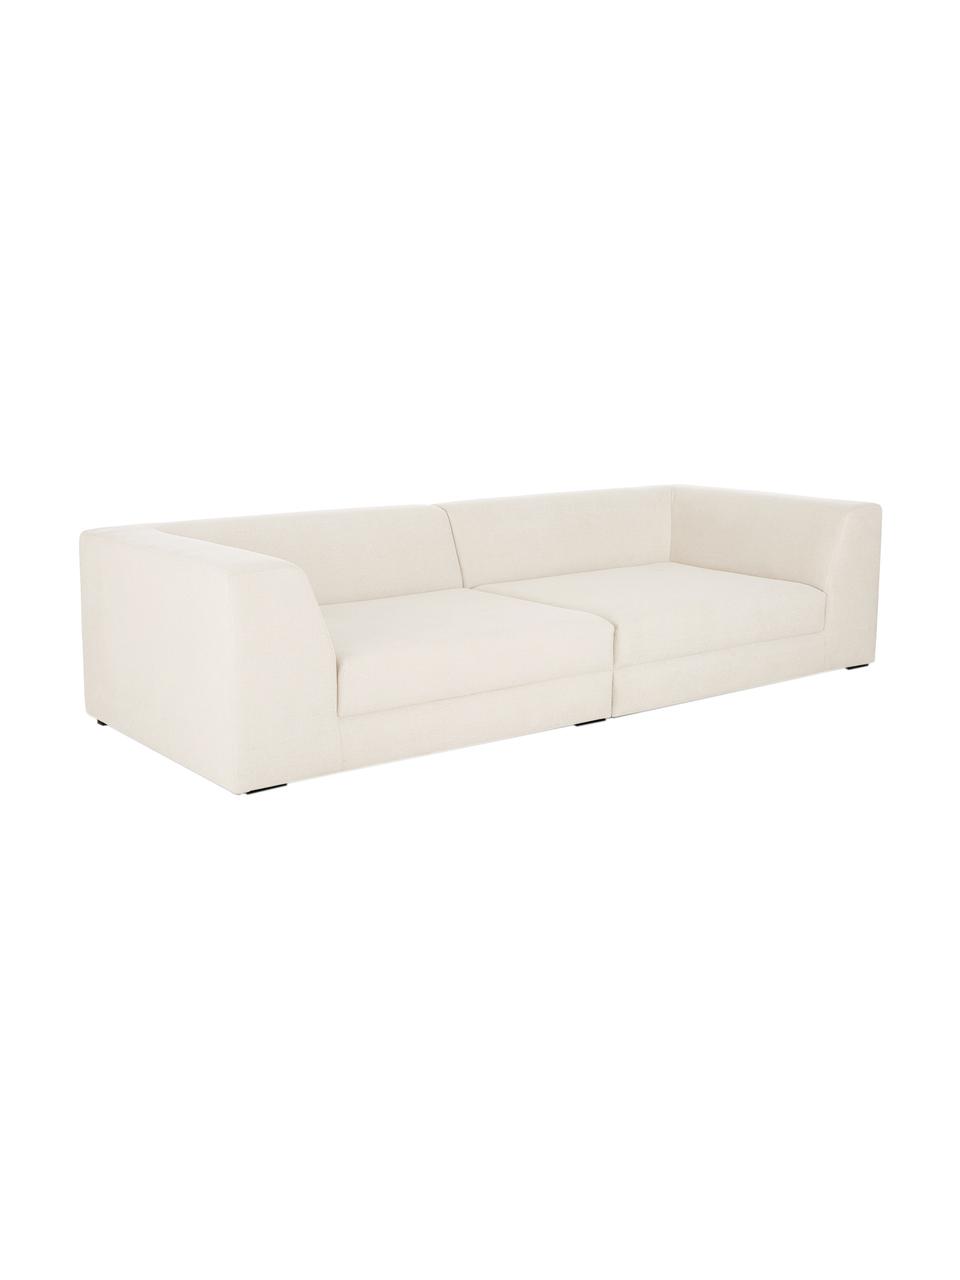 Modulares Sofa Grant (3-Sitzer) in Beige, Bezug: Baumwolle 20.000 Scheuert, Gestell: Fichtenholz, Füße: Massives Buchenholz, lack, Webstoff Beige, B 266 x T 106 cm